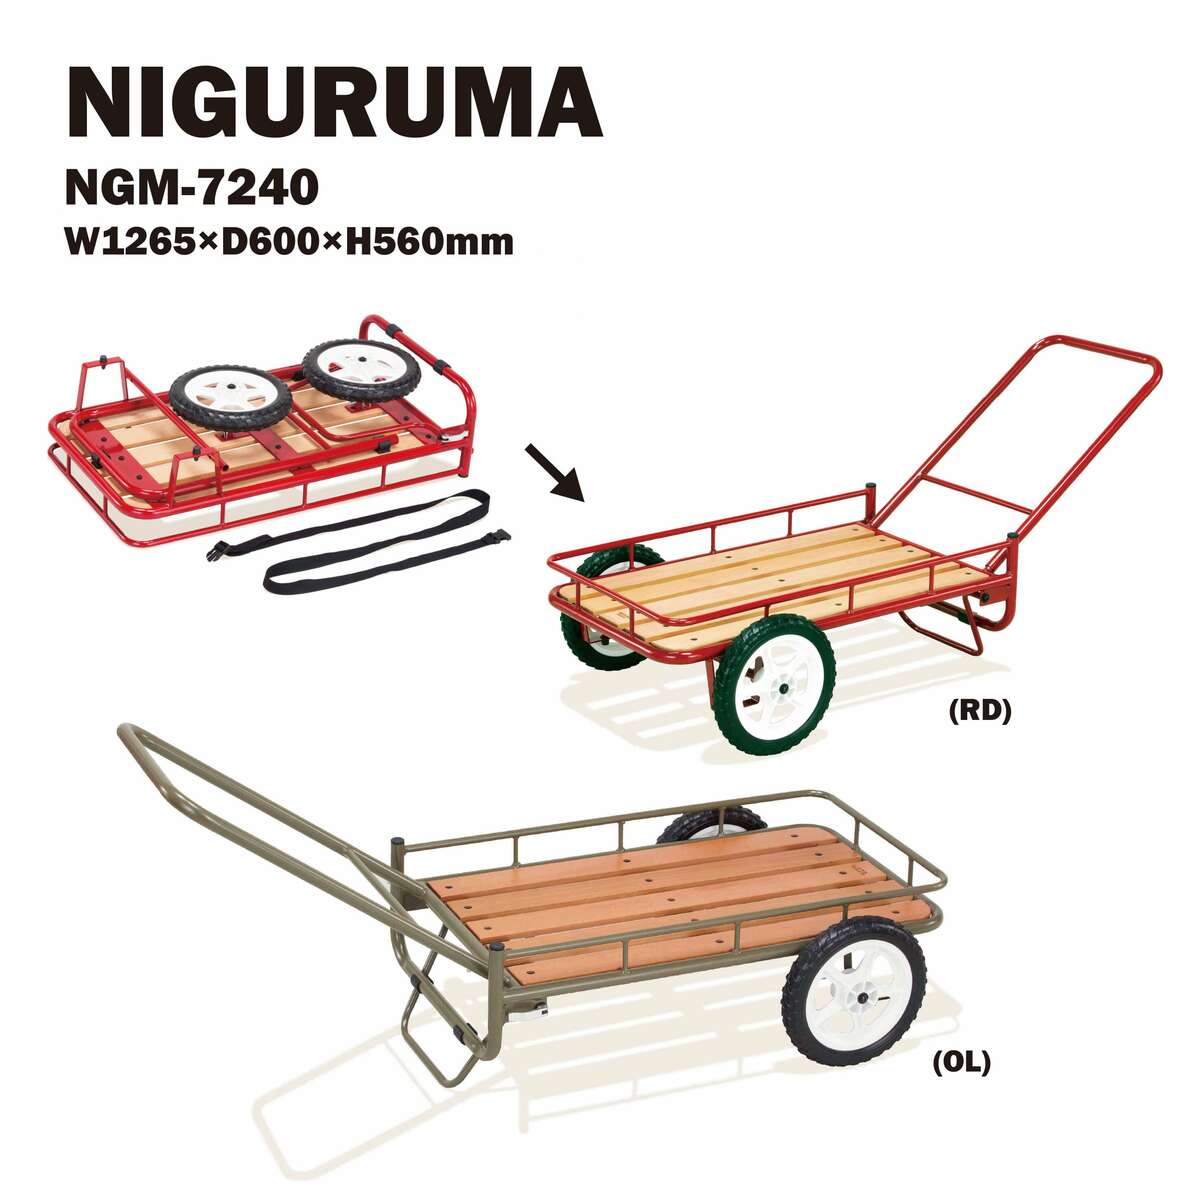 商品情報商品名ニグルマ NIGURUMA型番NGM-7240サイズW1265×D600×H560mm荷台サイズ：W800x400mm材質フレーム：スチール 塗装荷台：天然木 塗装タイヤ：EVAノーパンクタイヤ（ブラック）組立式カラーOL（オリーブ）／　RD（レッド）重量9.0kg耐荷重：50kg生産国台湾特徴双輪タイヤのアウトドア・キャリーワゴン。ハンドルとタイヤが分離して本体底部に収納できるので、フラットな状態で効率よく車載可能。ニグルマ NIGURUMA キャリーワゴンNIGURUMA HangOut [ハングアウト] NGM-7240 荷車 キャリーカート ワゴン キャリー カート 運搬 レッド オリーブ 赤 フラット レジャー キャンプ バーベキュー 在宅勤務 北海道・東北地方・沖縄・離島発送不可。 2